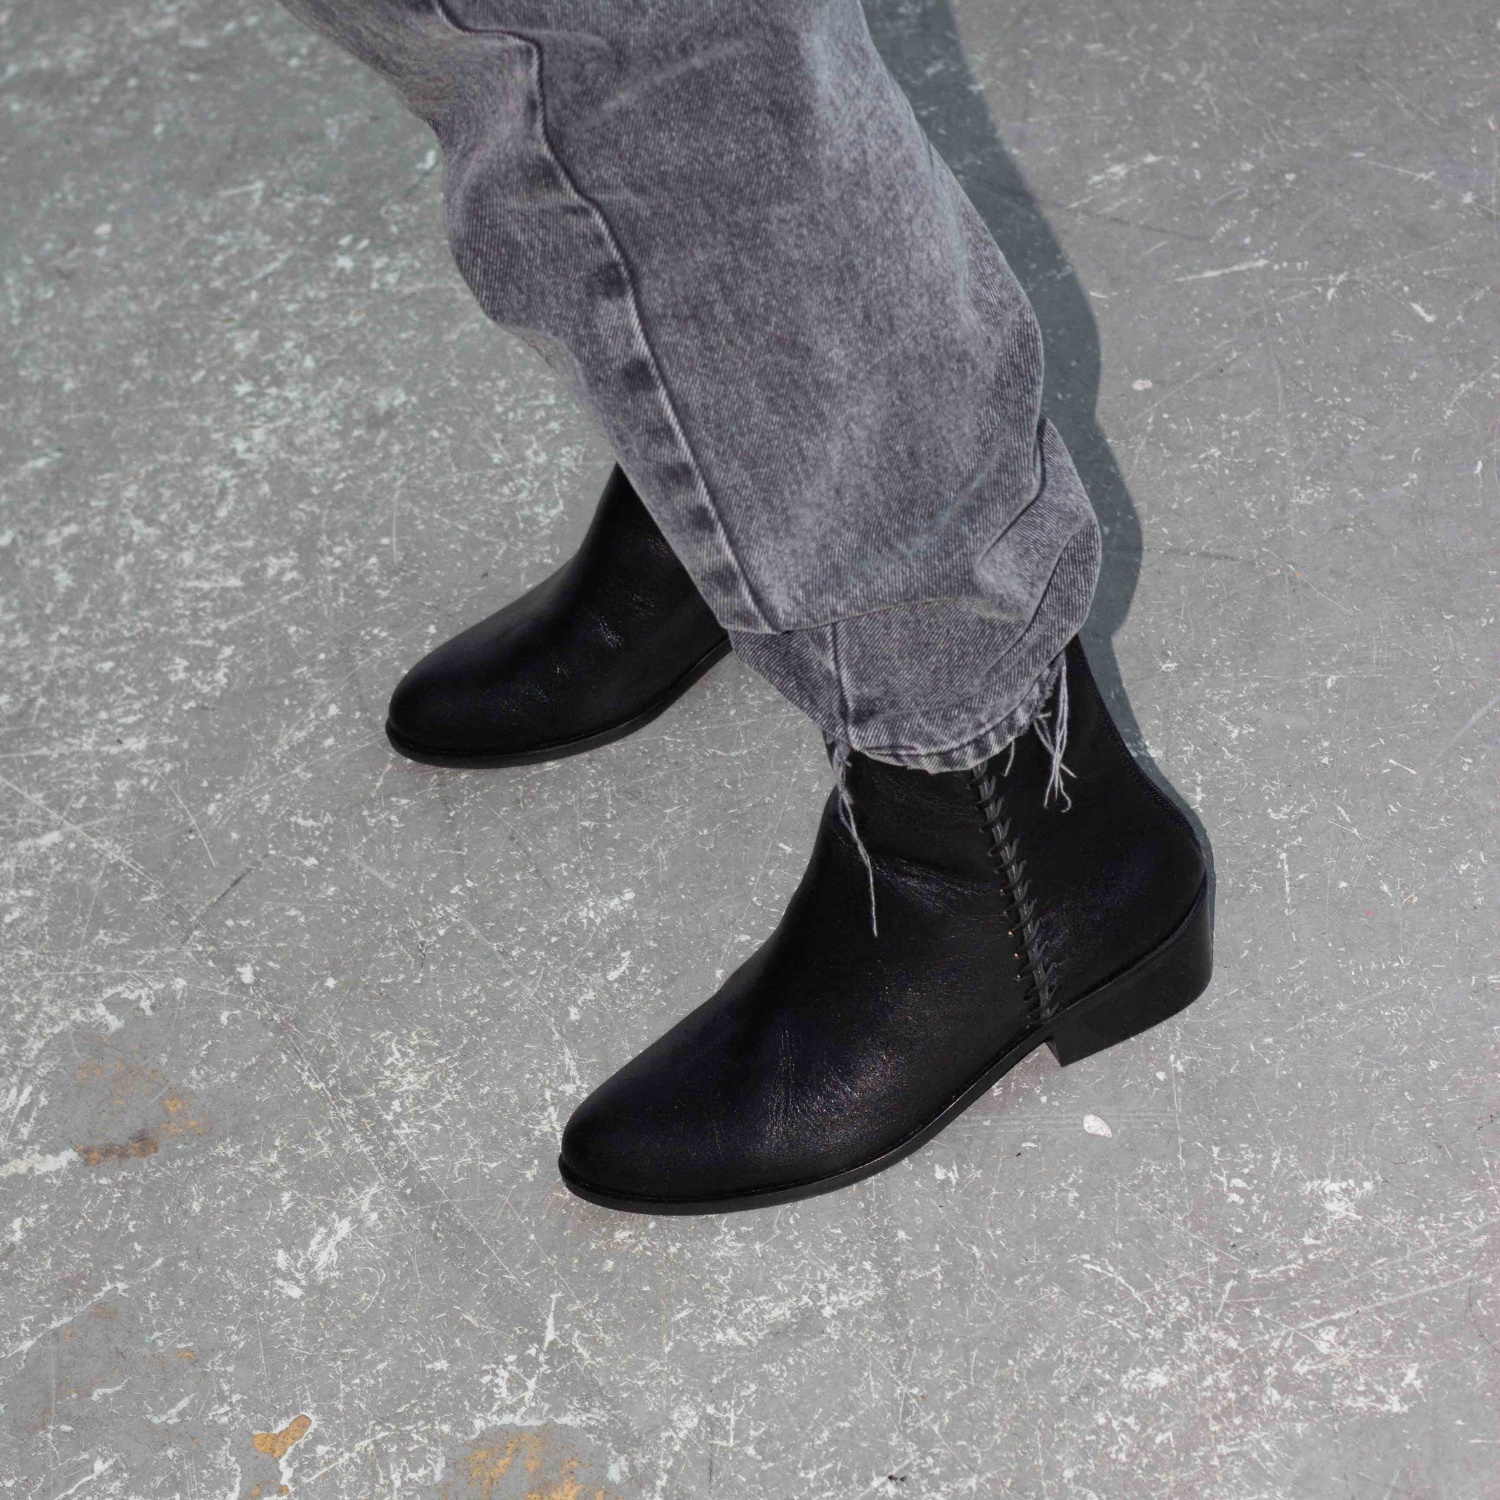  Rikma Boots, black-3 